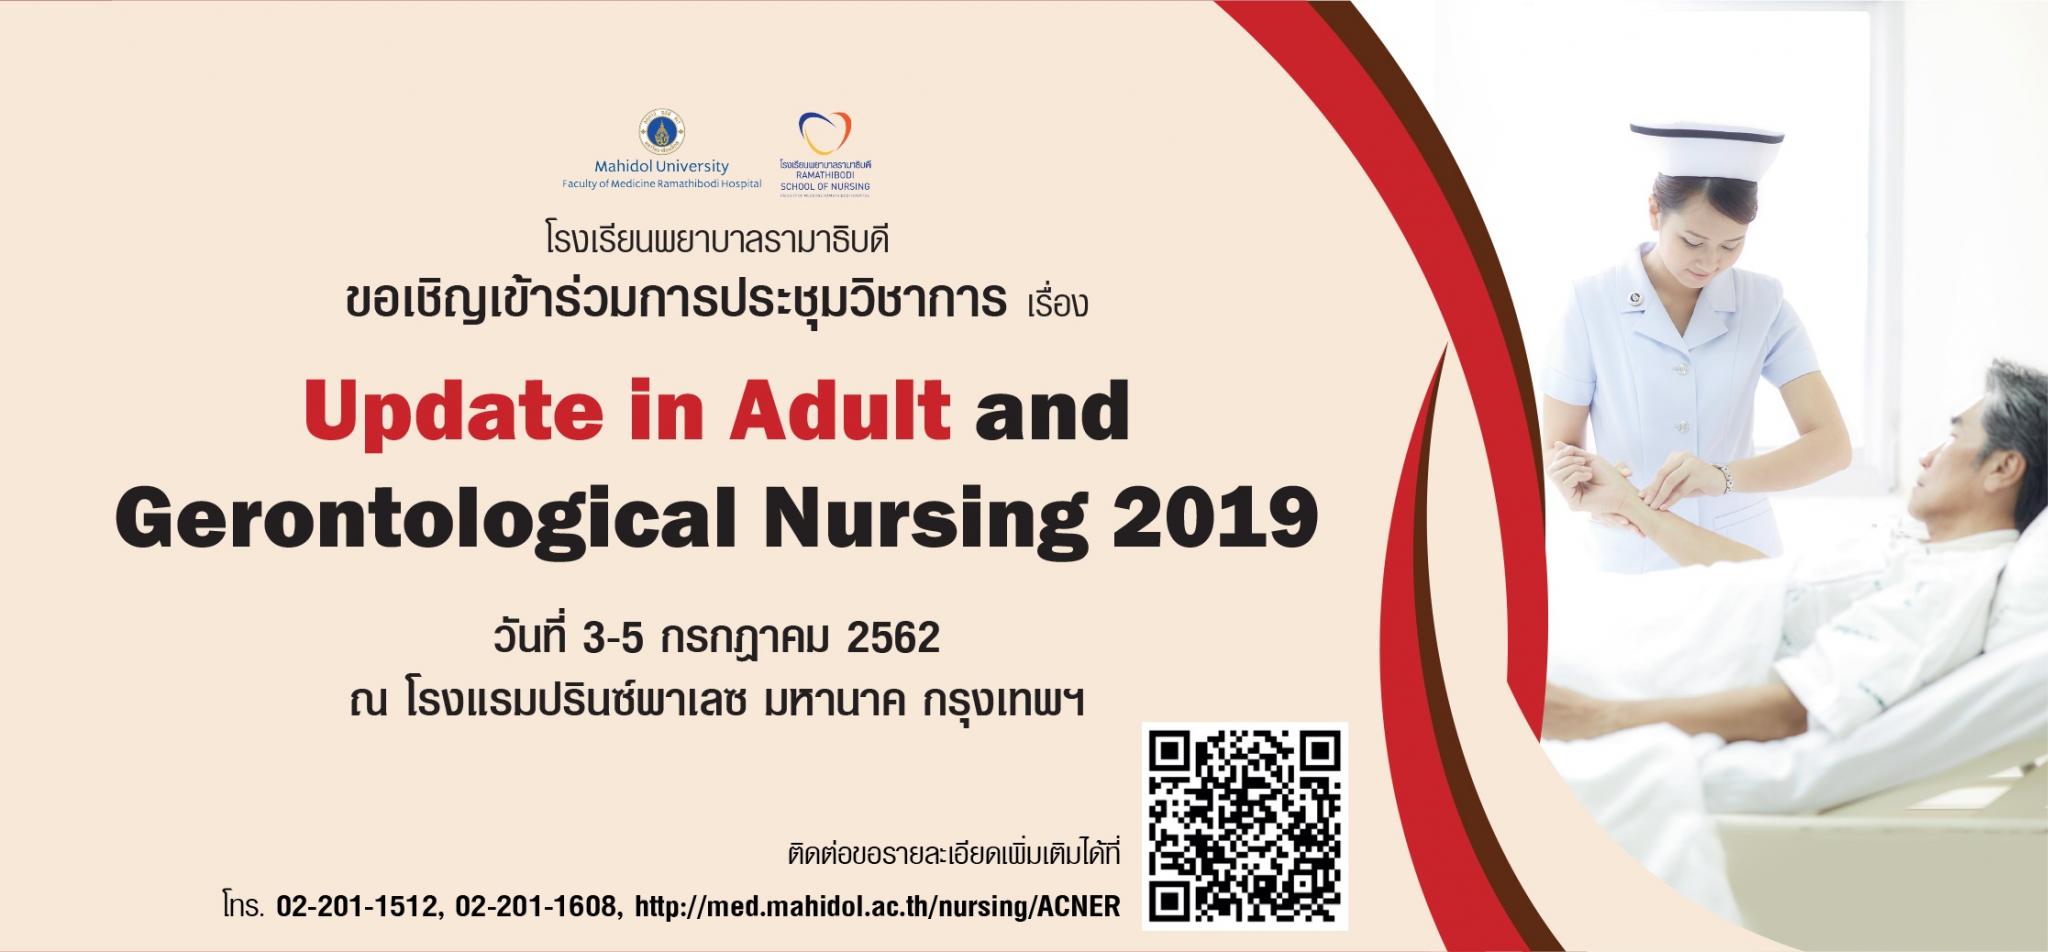 ขอเชิญเข้าร่วมการประชุมวิชาการเรื่อง Update in Adult and Gerontological Nursing 2019